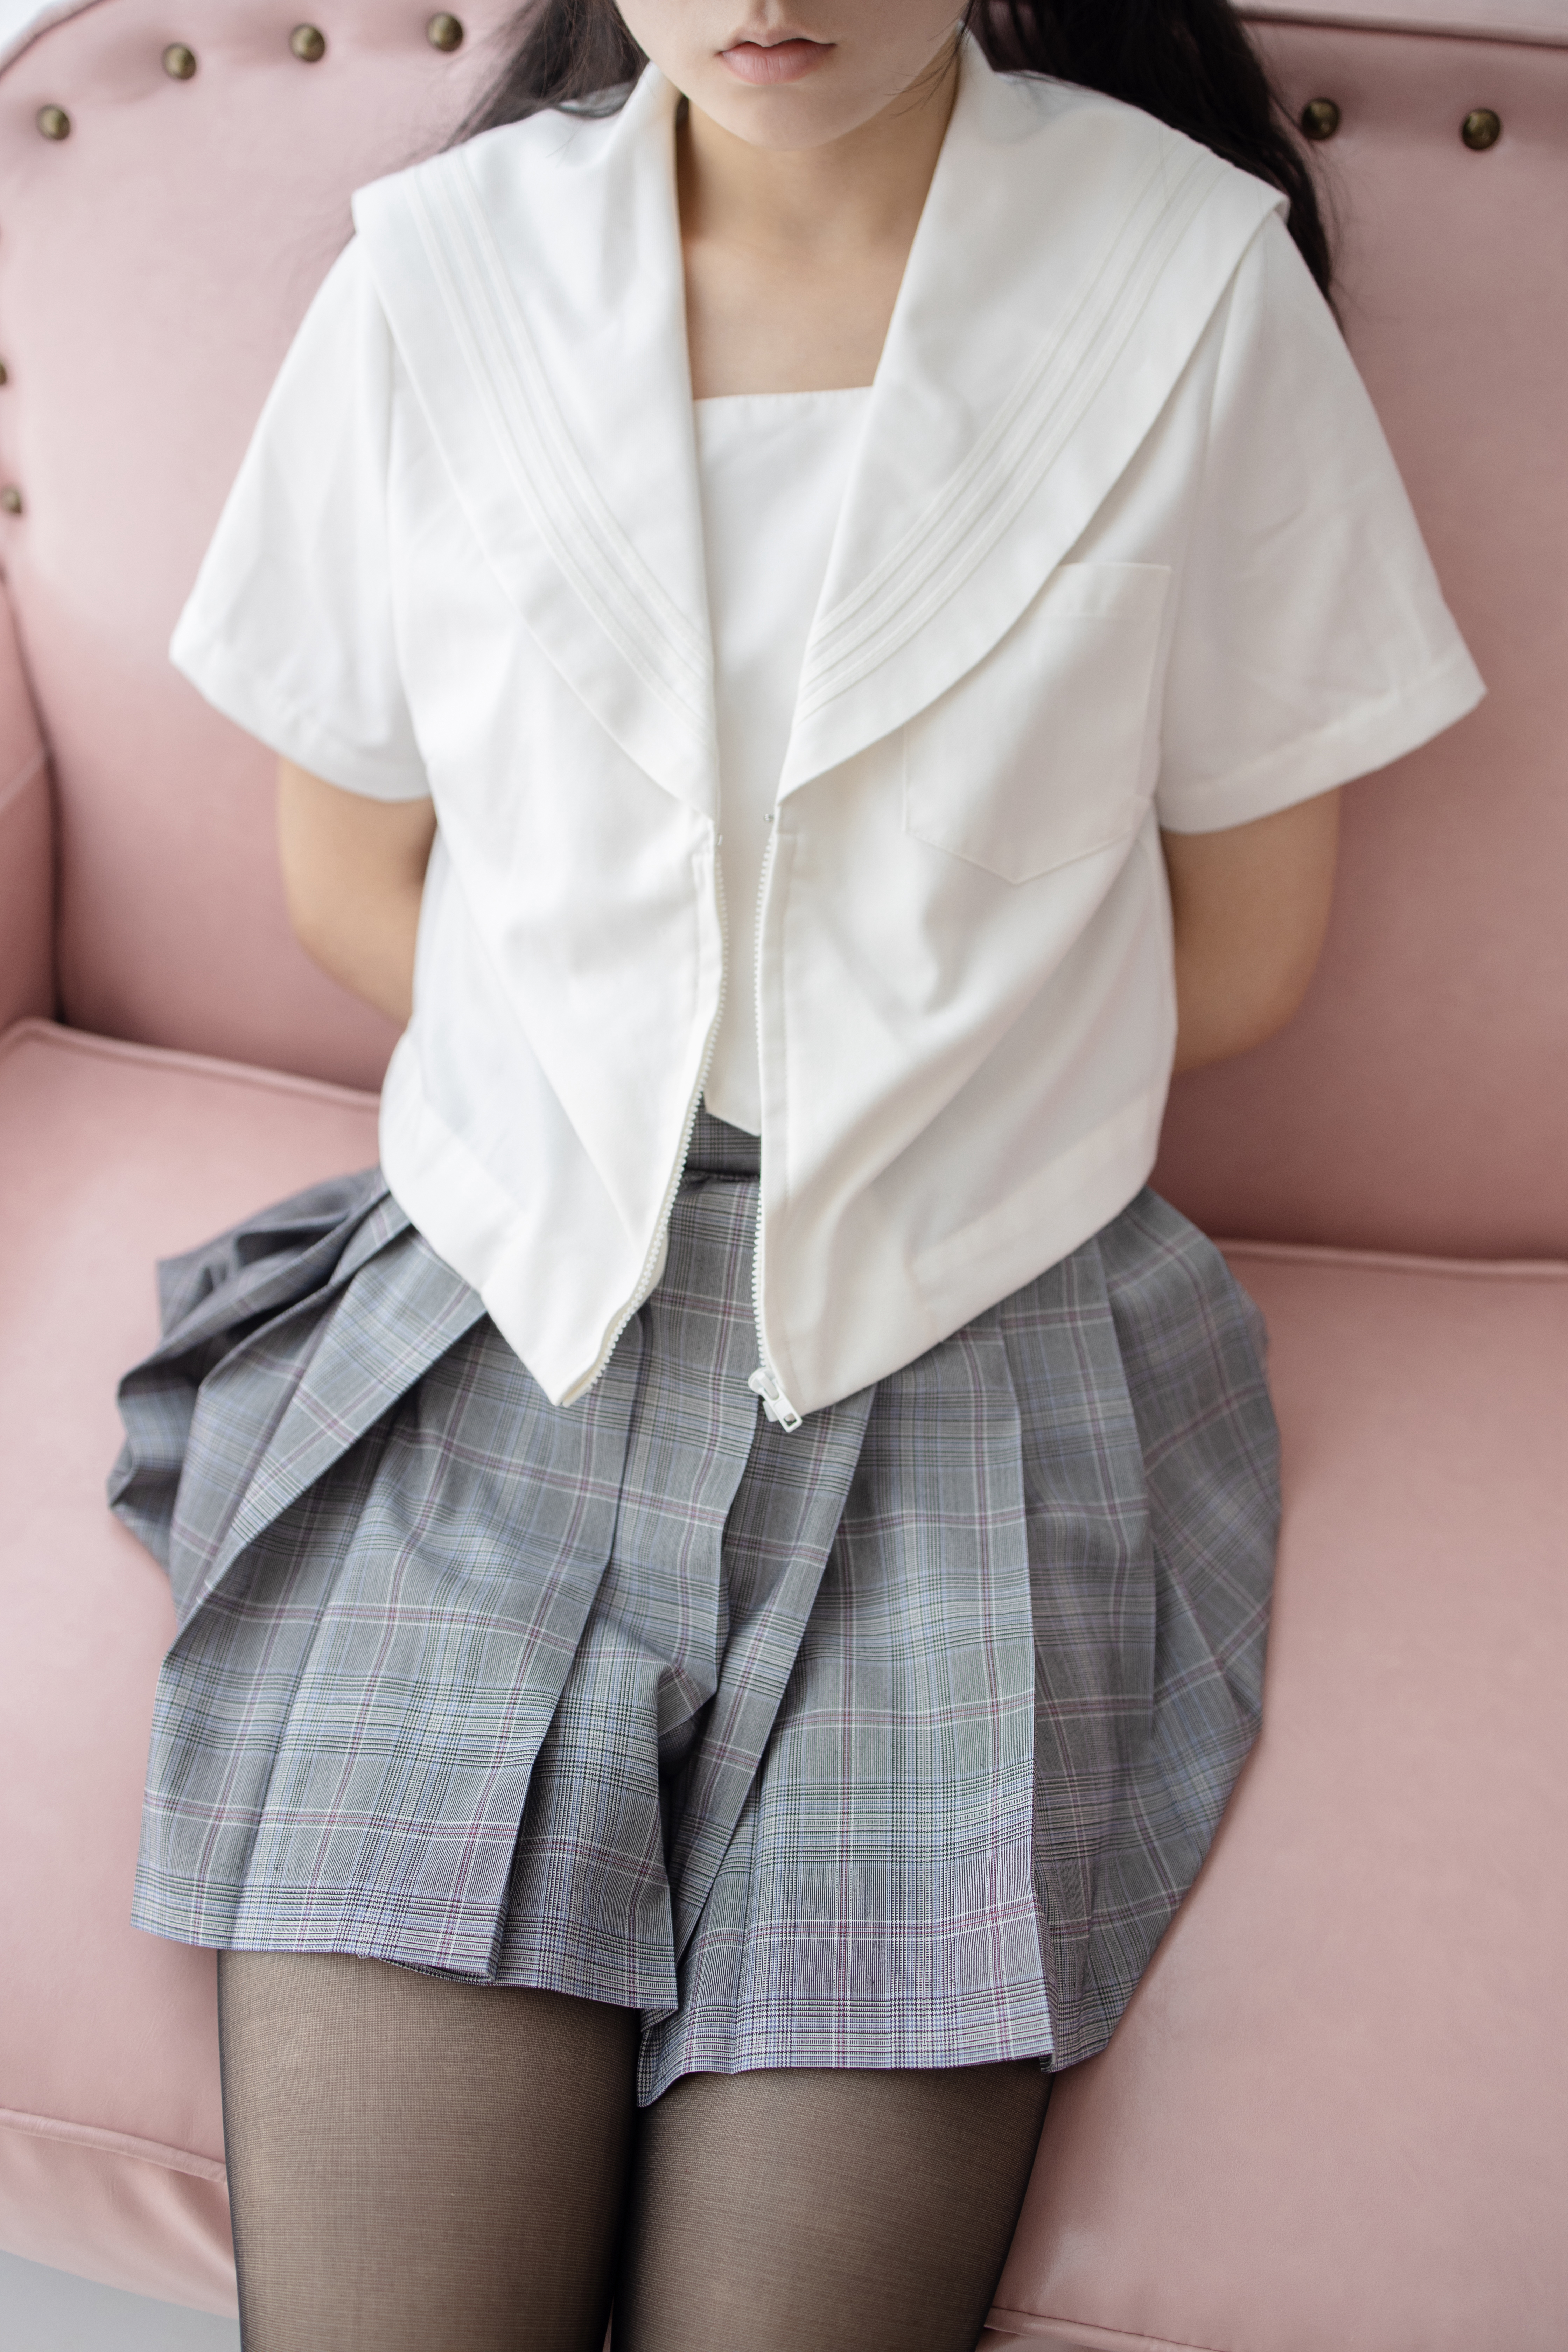 School Uniform Cosplay Women Lips Arms Behind Back Schoolgirl Model Women Indoors Skirt Sailor Unifo 4480x6720